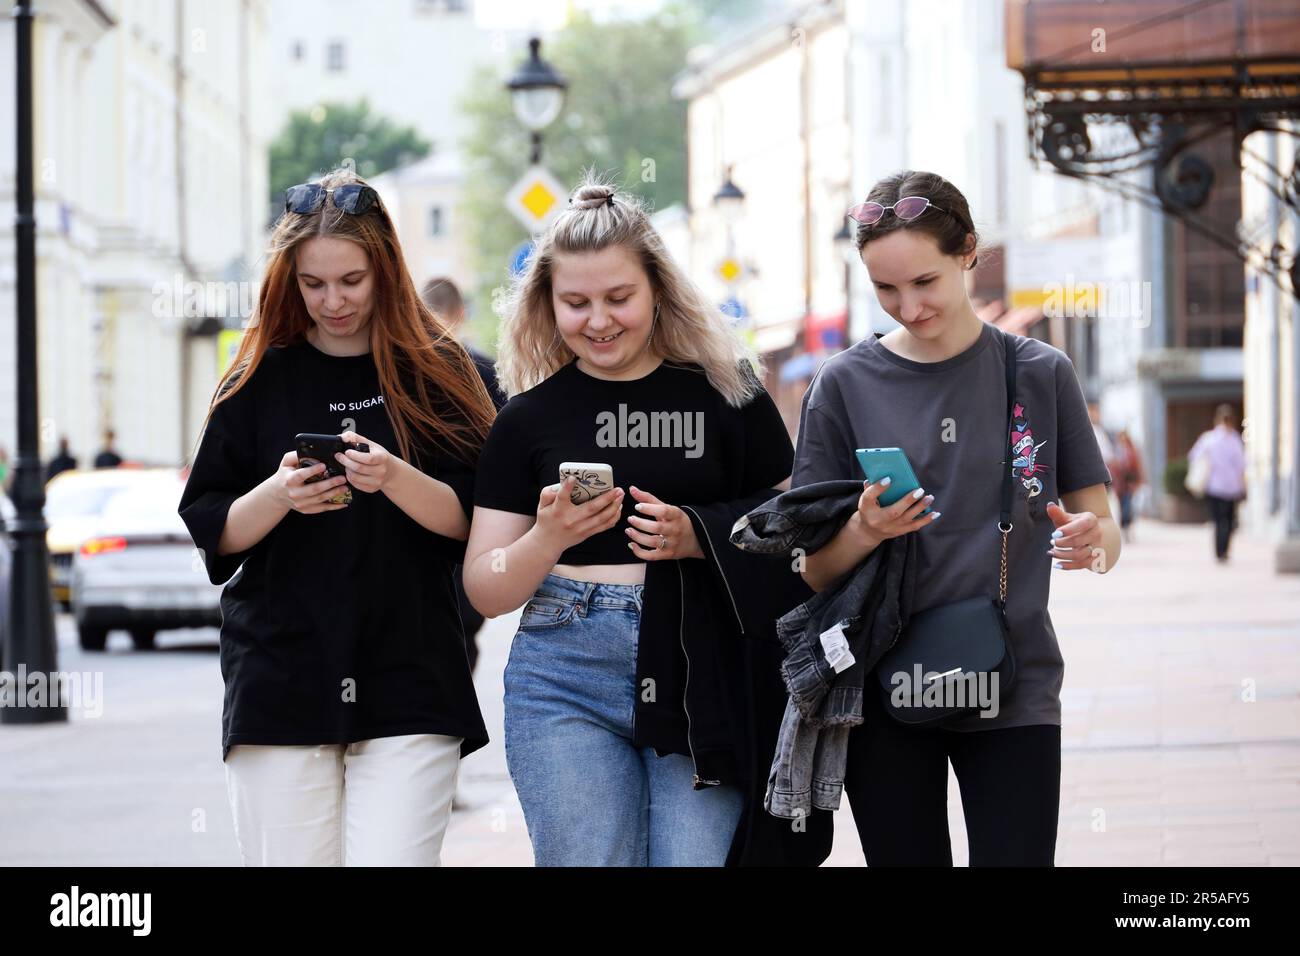 Persone felici che usano gli smartphone per strada. Tre ragazze sorridenti che camminano con i telefoni cellulari in mano Foto Stock